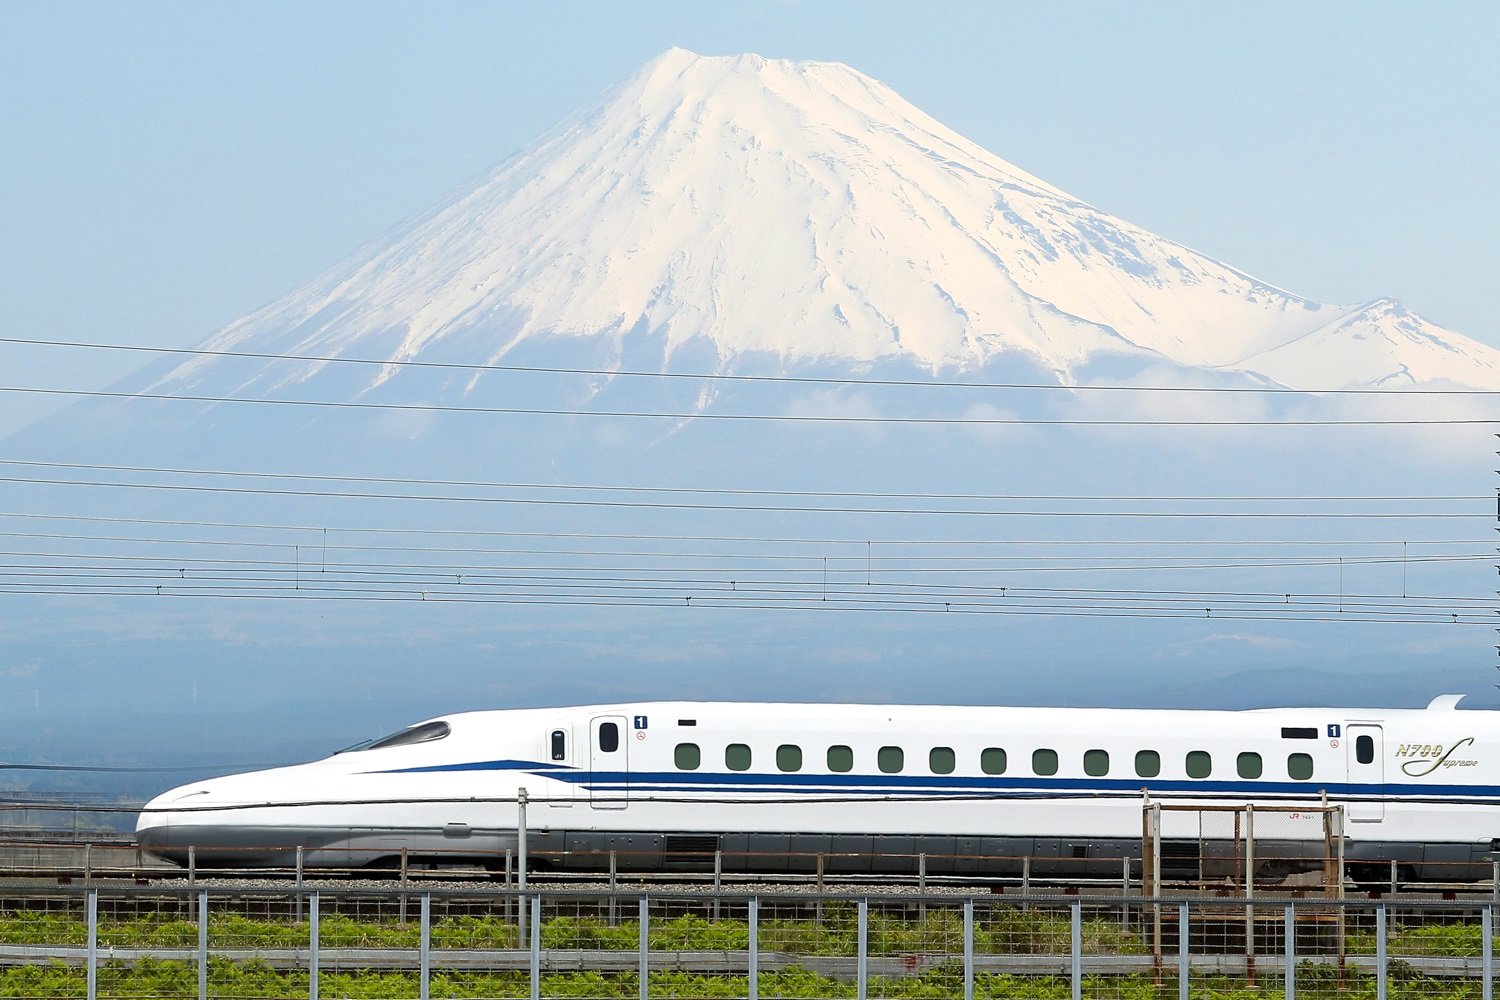 ○新幹線 JR東海 富士山テレカ - プリペイドカード